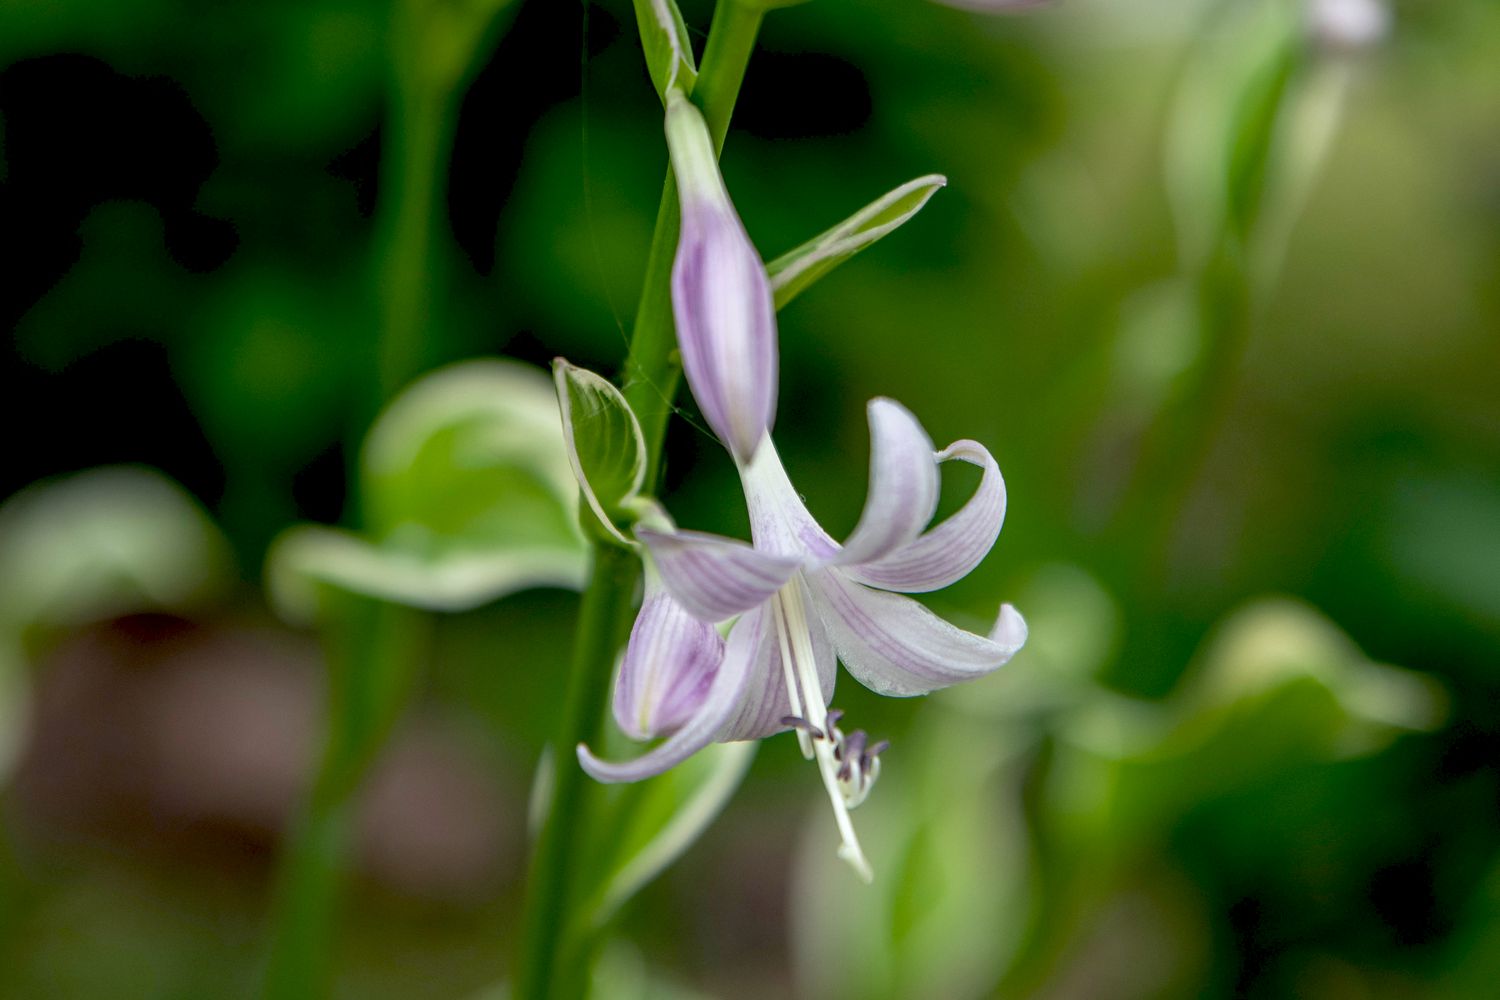 Haste da planta hosta francesa com pequena flor branca e lavanda em close-up